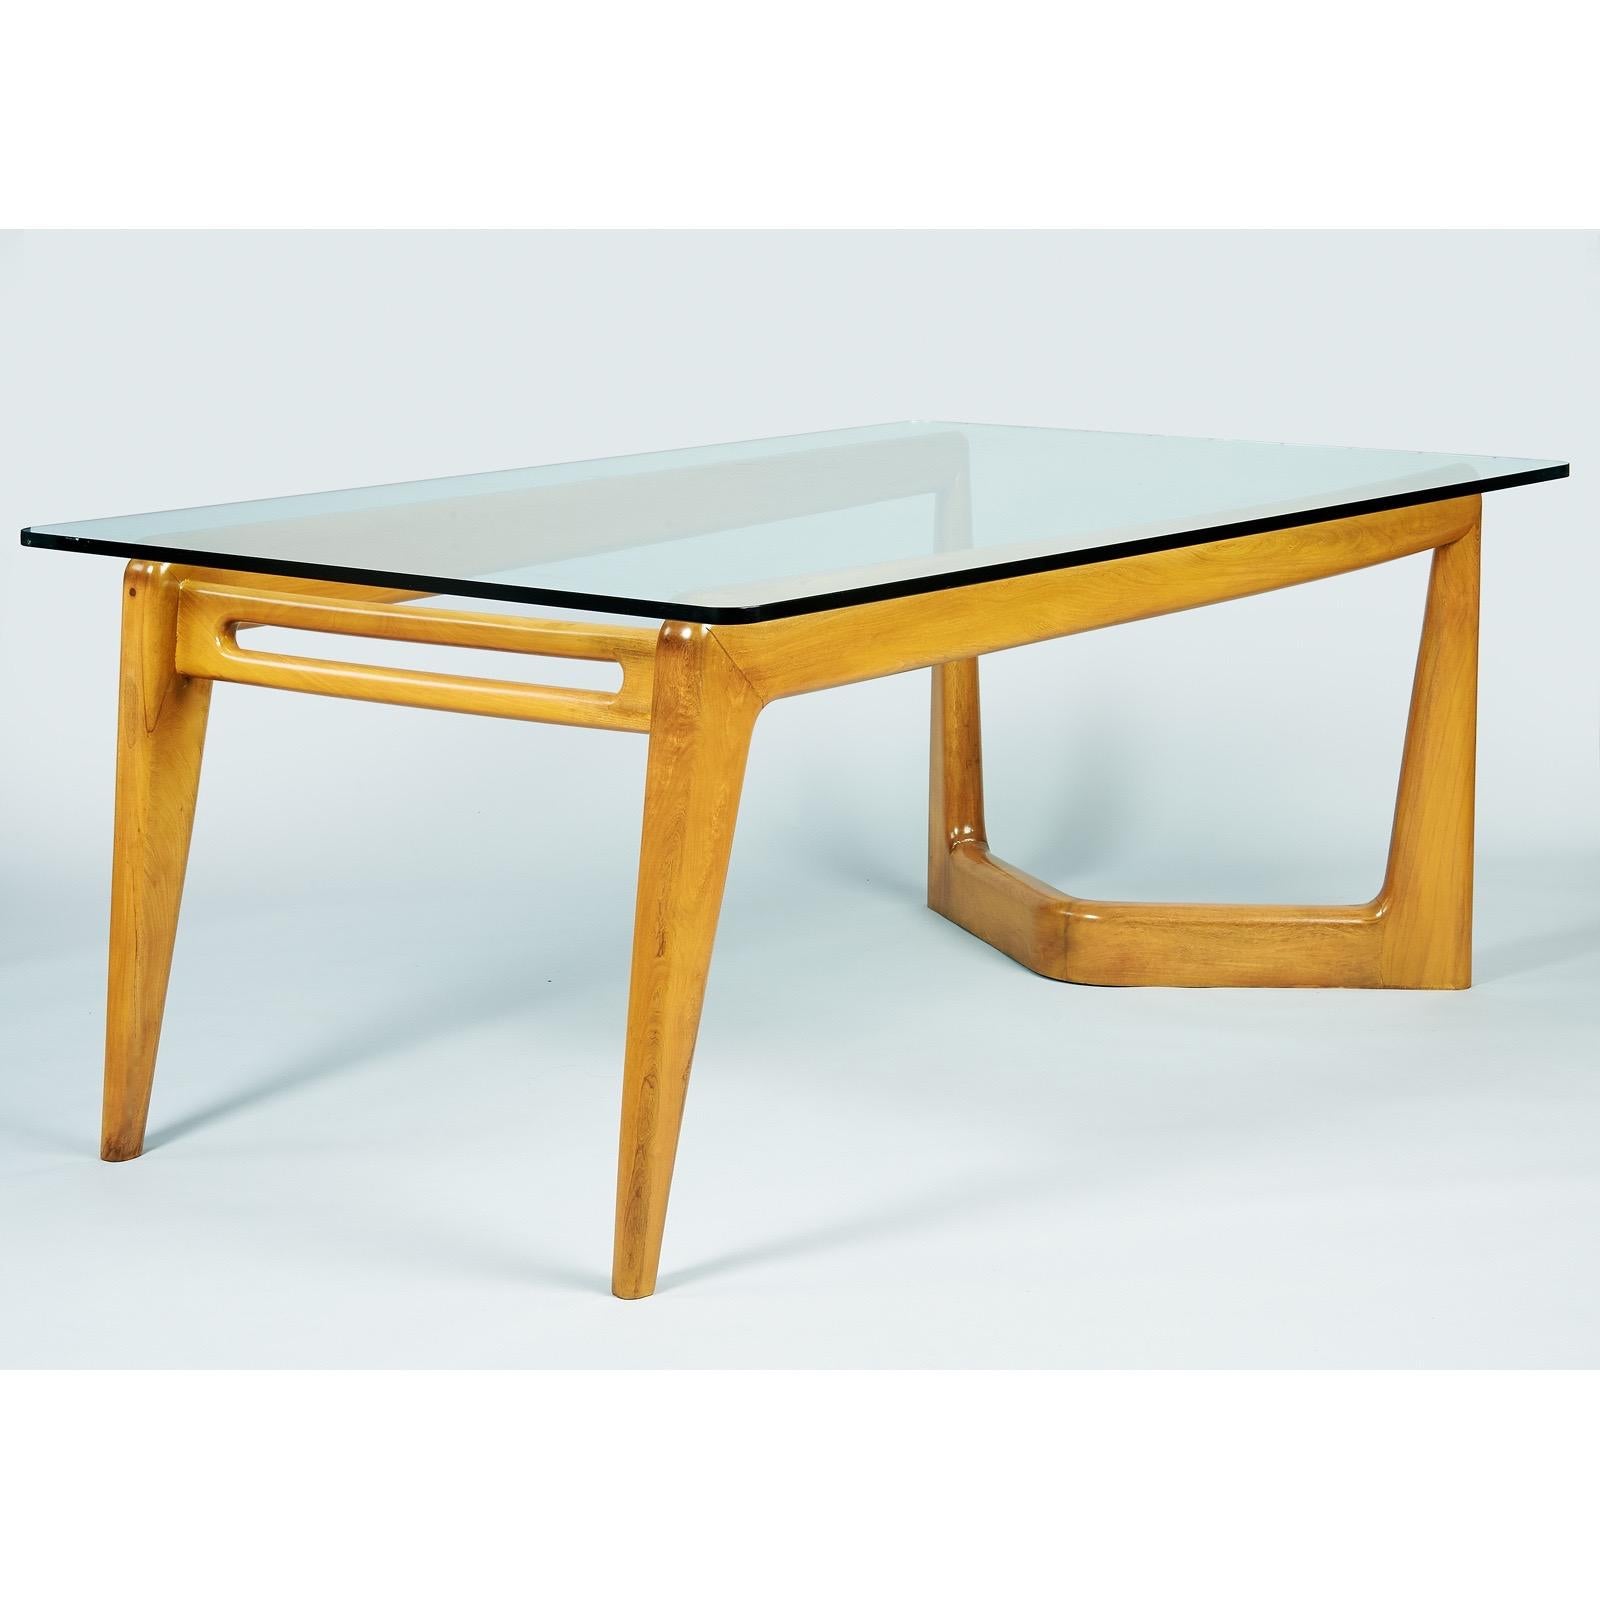 Pierluigi Giordani, (1924 - 2011) 

Une table de salle à manger biomorphique monumentale en bois de fruitier poli, créée par le pionnier du design italien du milieu du siècle, Pierluigi Giordani. L'imposante base sculpturale est audacieusement